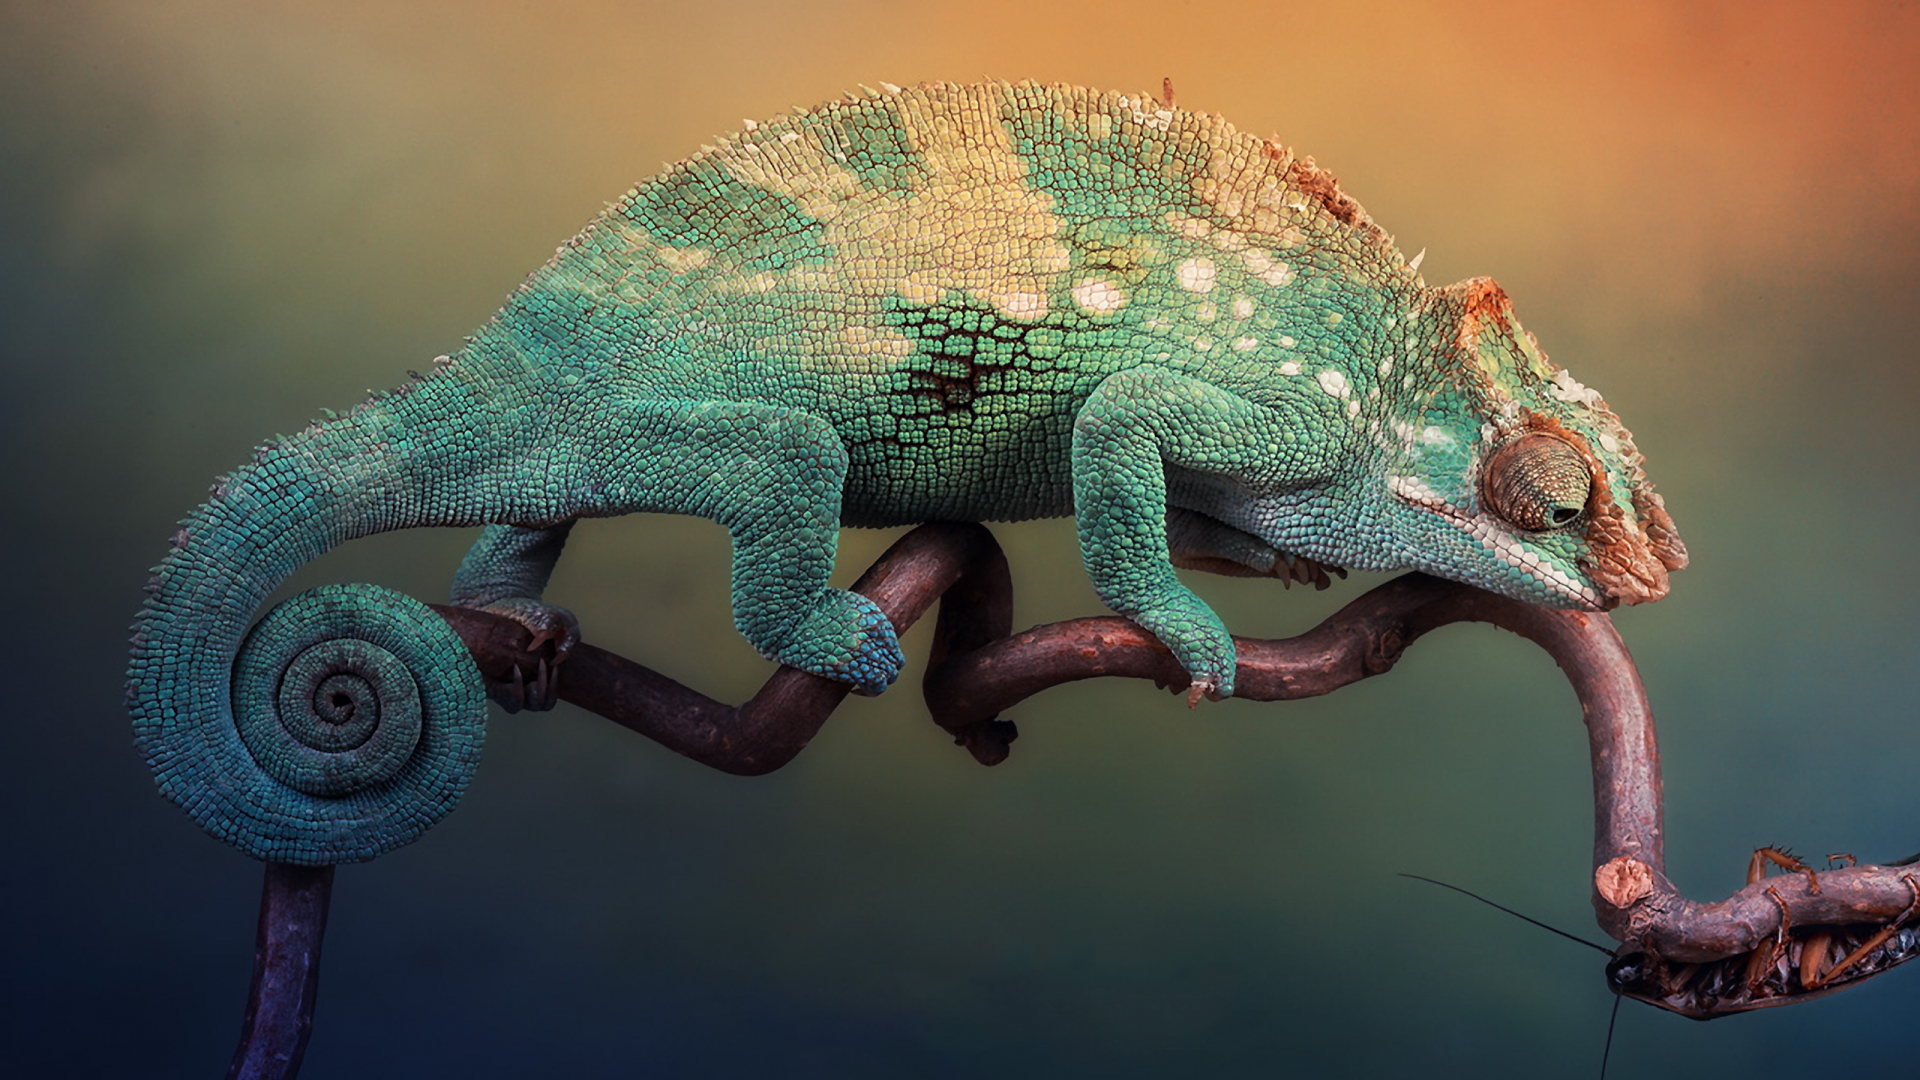 Wallpaper Chameleon lizard